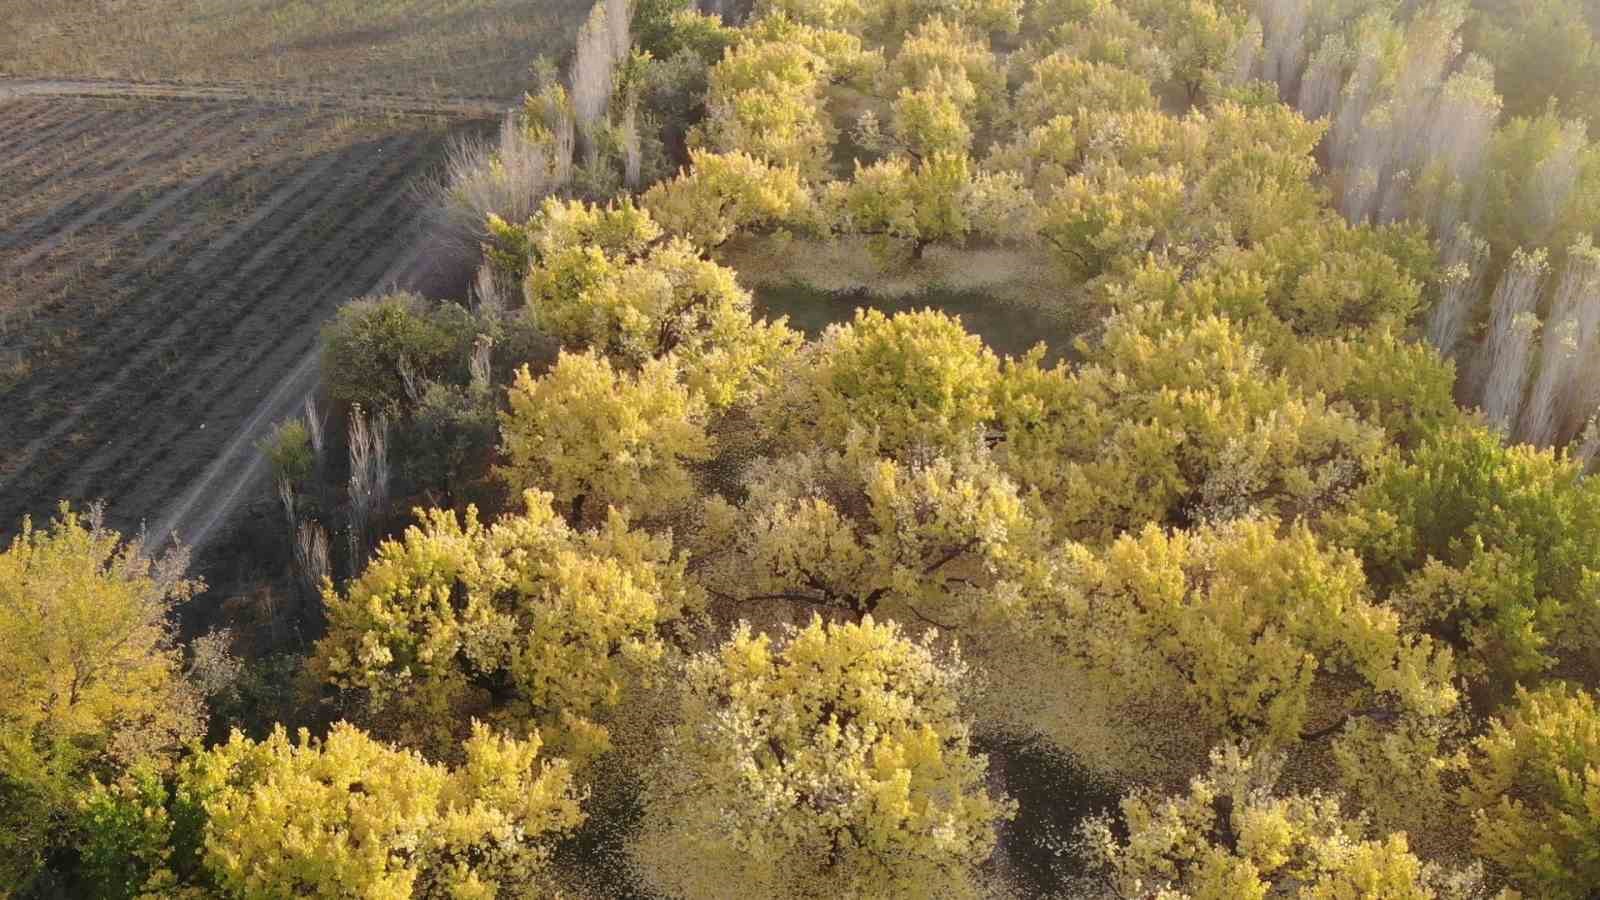 Iğdır’ın kayısı bahçelerindeki sonbahar güzelliği havadan görüntülendi